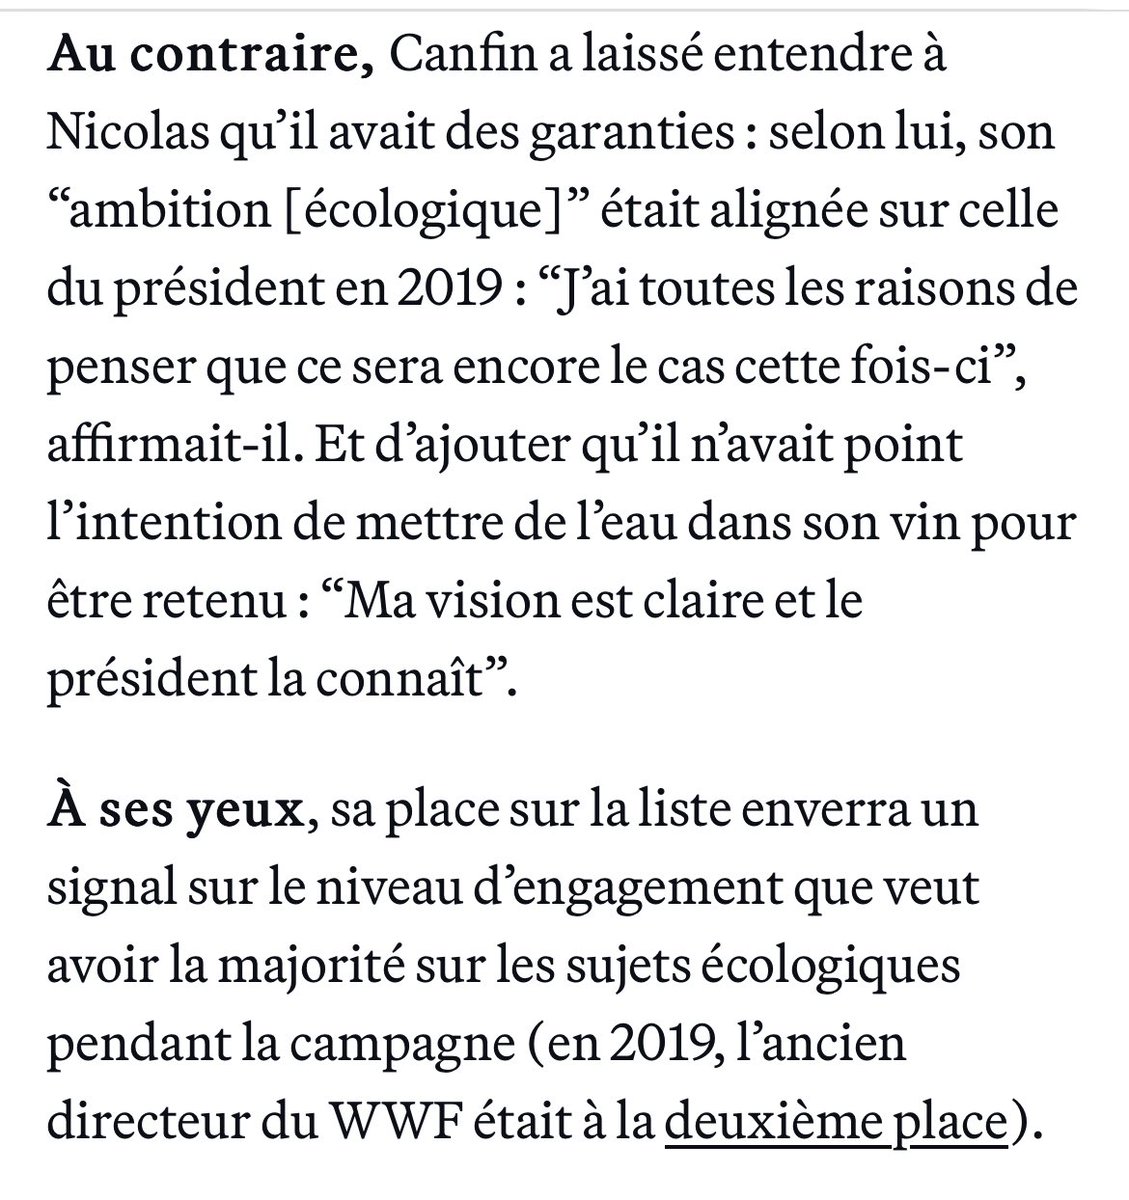 Pascal Canfin dit avoir « toutes les raisons de penser » que « l’ambition écologique » d’E. Macron est toujours alignée sur la sienne et qu’il ne fera donc « pas de la figuration » sur la liste Renew pour les européennes, @nicolas_camut et @AnthLattier, dans Playbook ce matin.